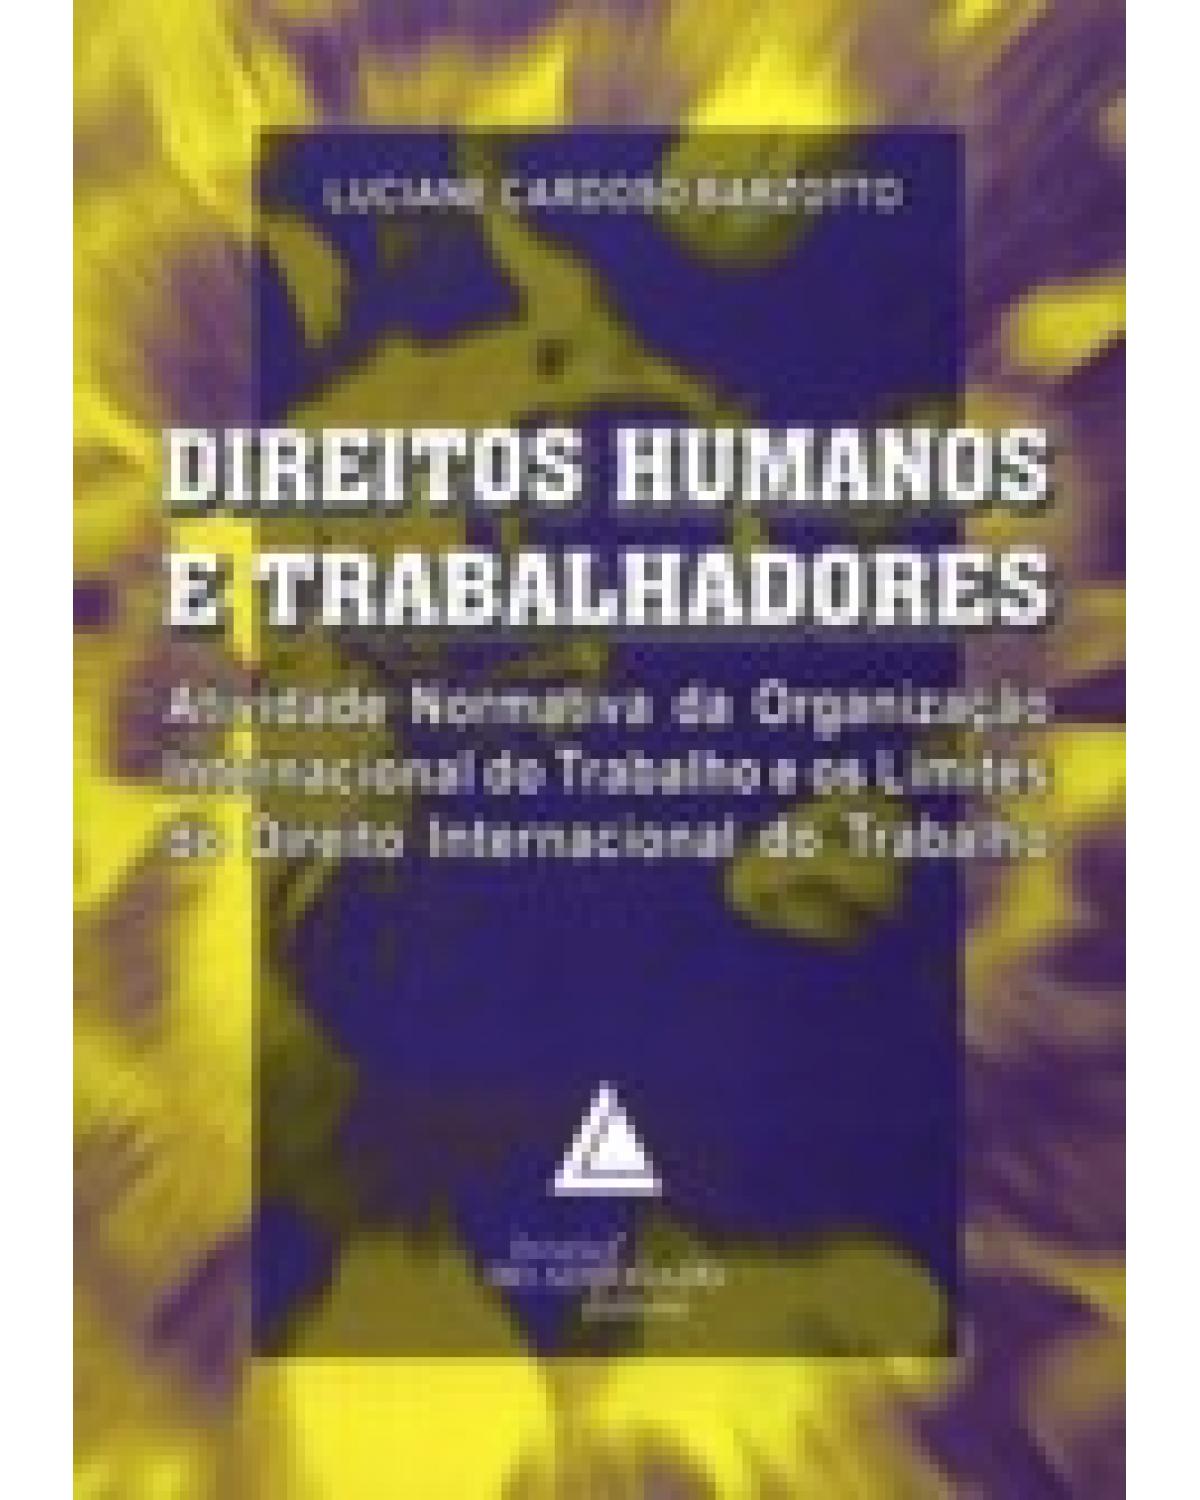 Direitos humanos e trabalhadores: Atividade normativa da Organização Internacional do Trabalho e os limites do direito - 1ª Edição | 2007